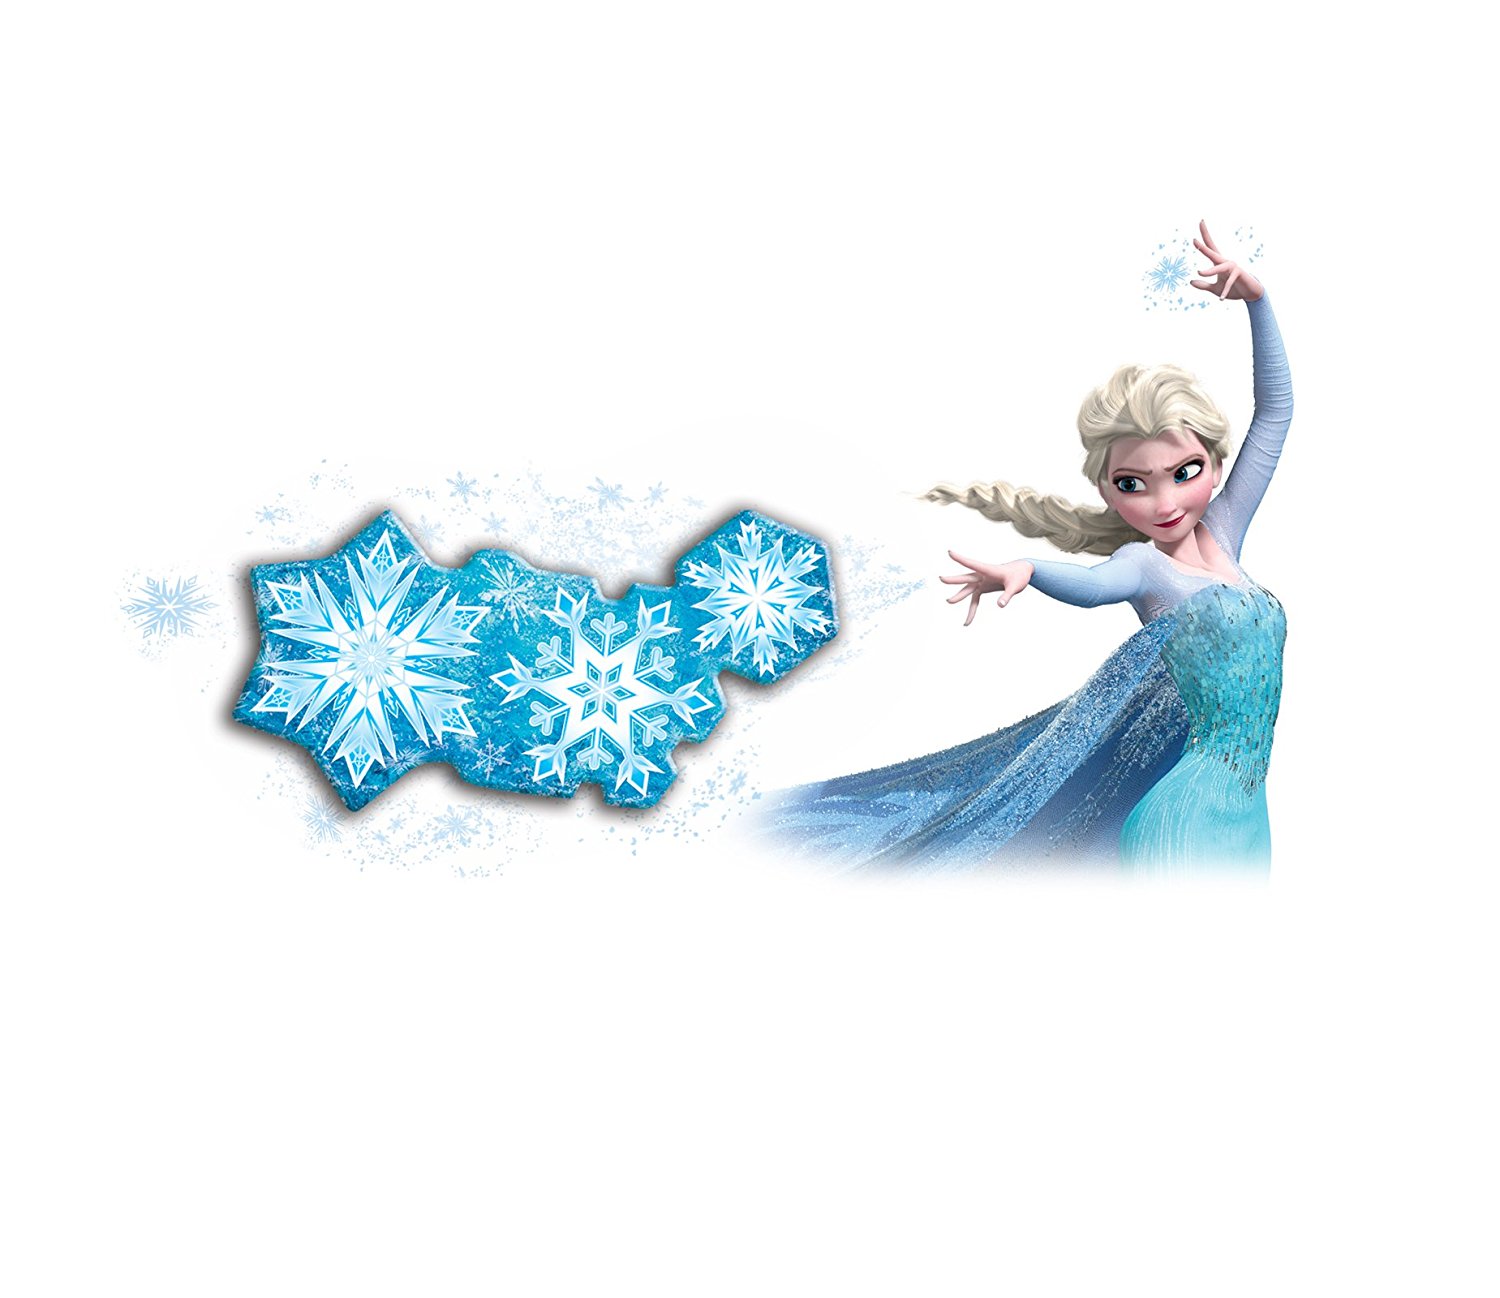 Amazon.com: Uncle Milton - Disney's Frozen Dreams Scenes: Toys & Games